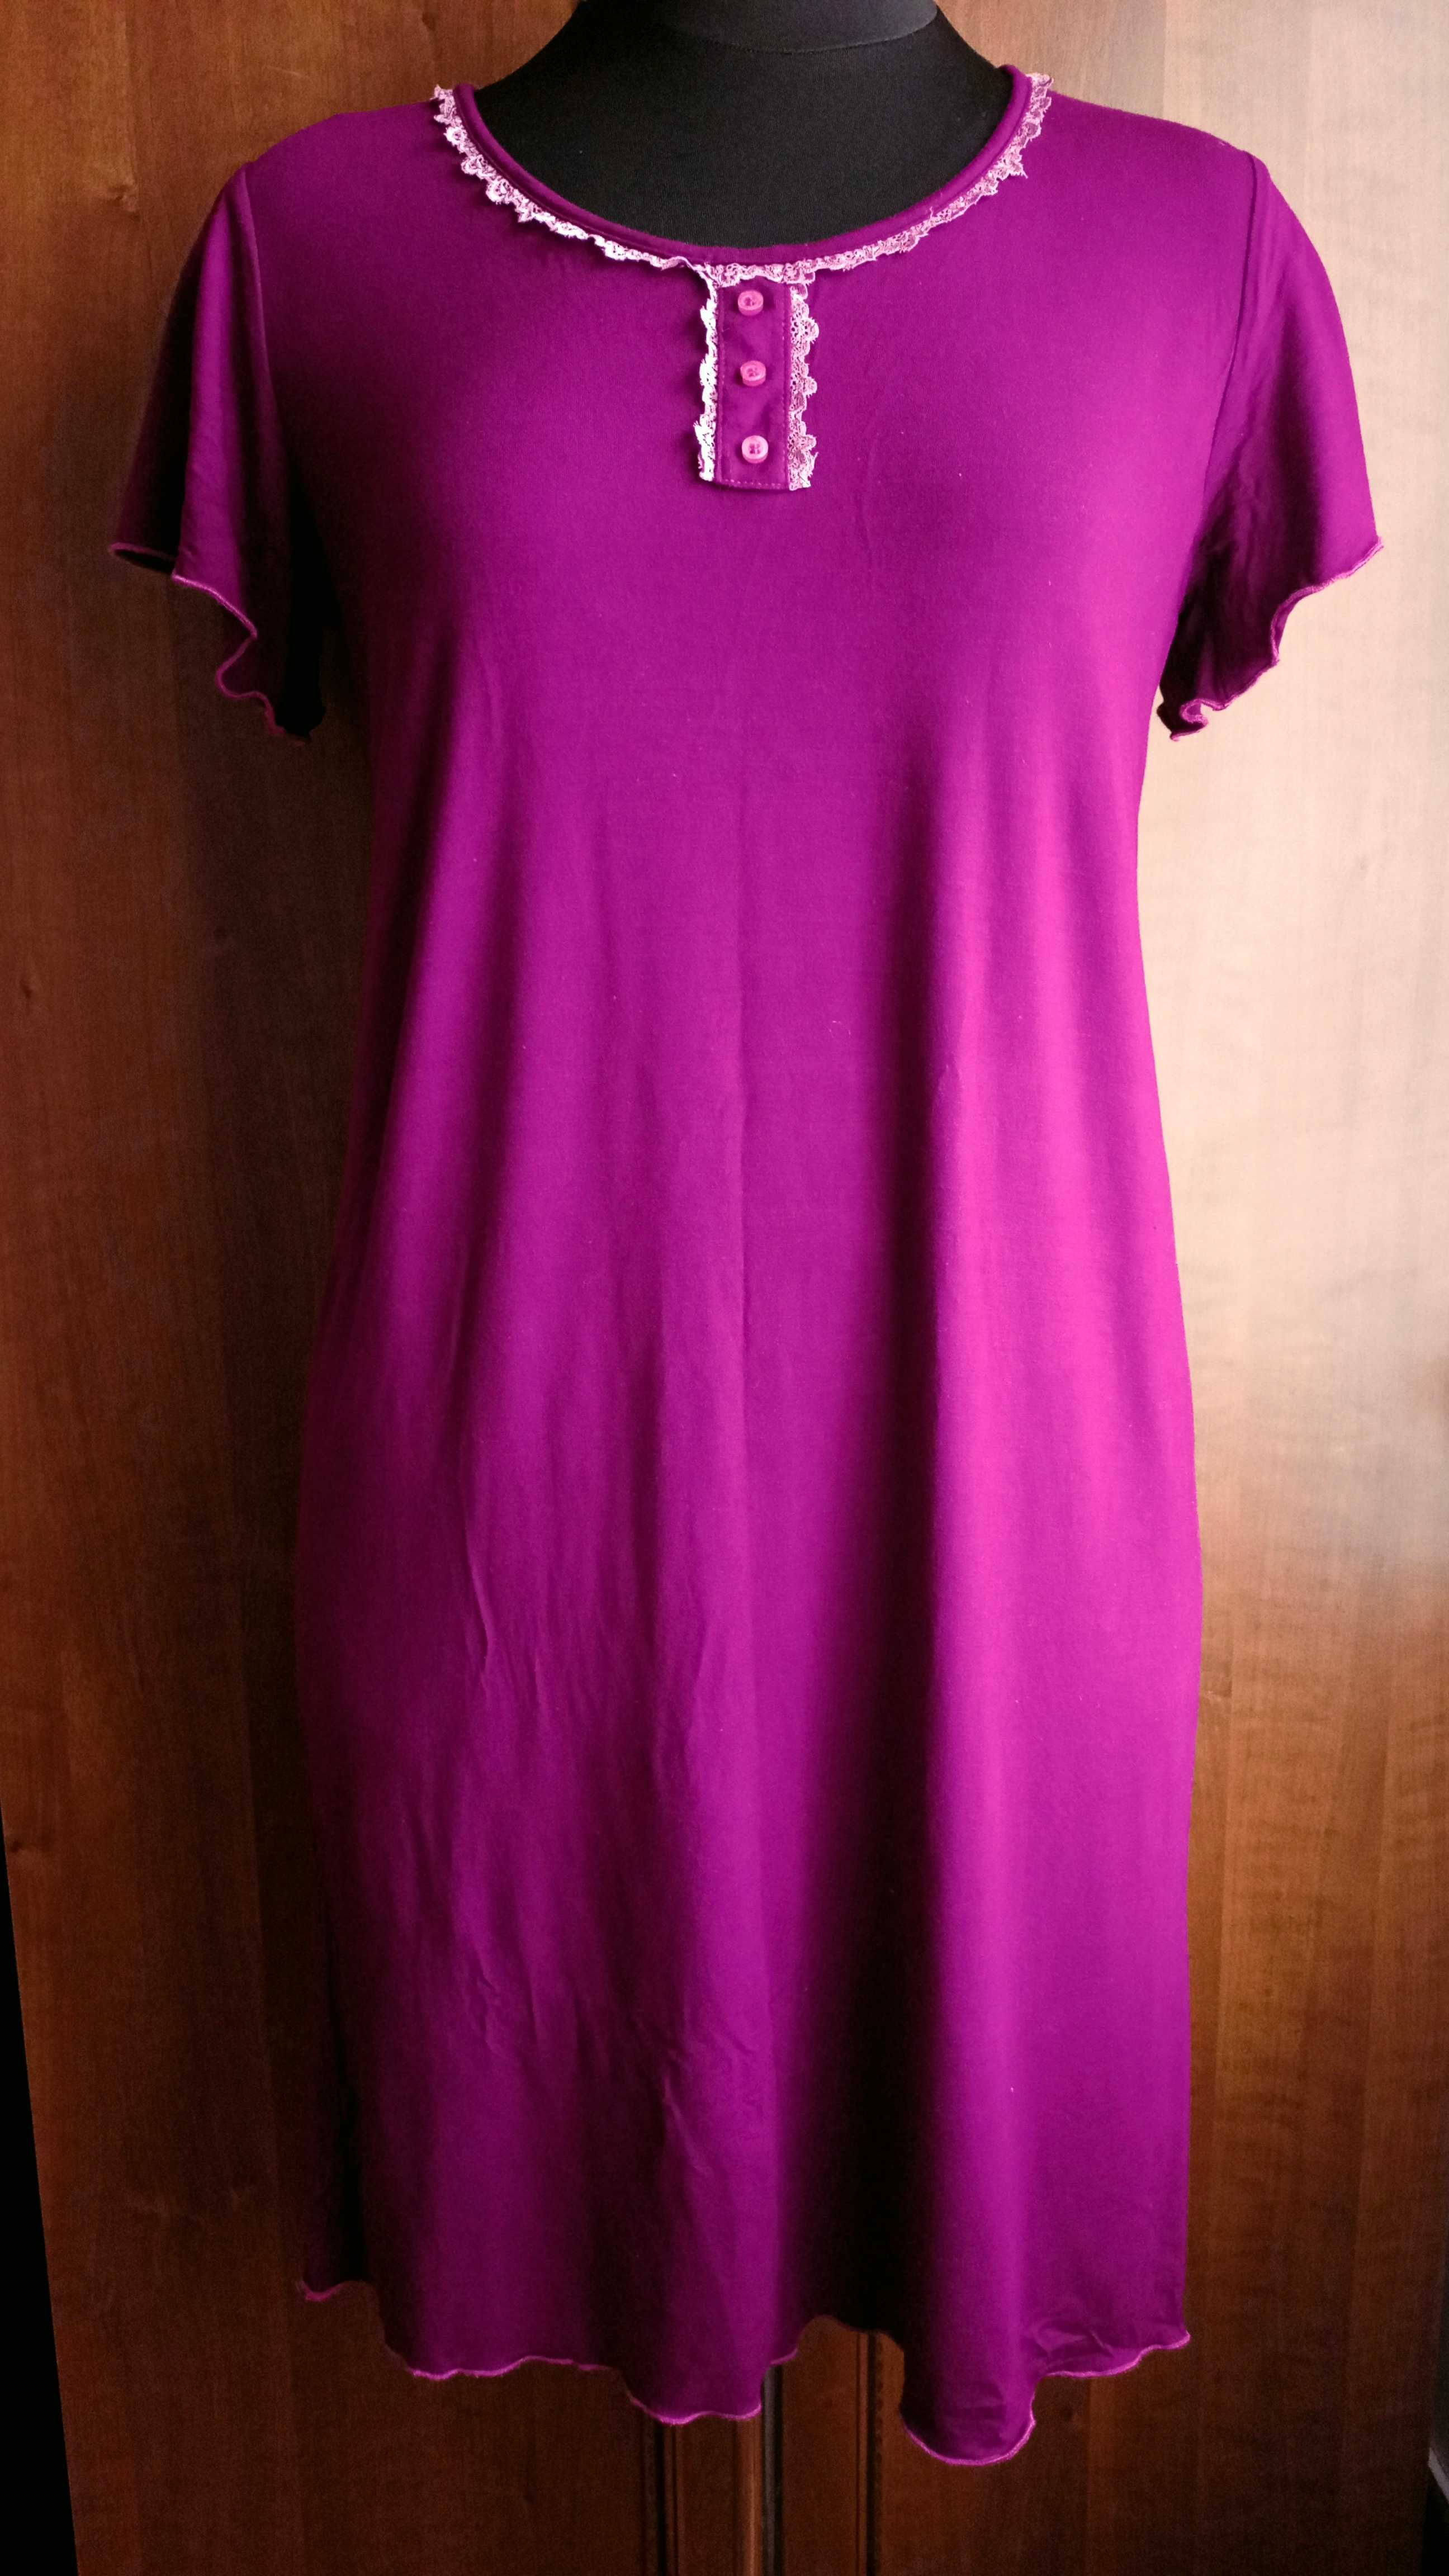 Жіноча трикотажна сукня, жіноча сорочка, домашня сукня, 48 розмір